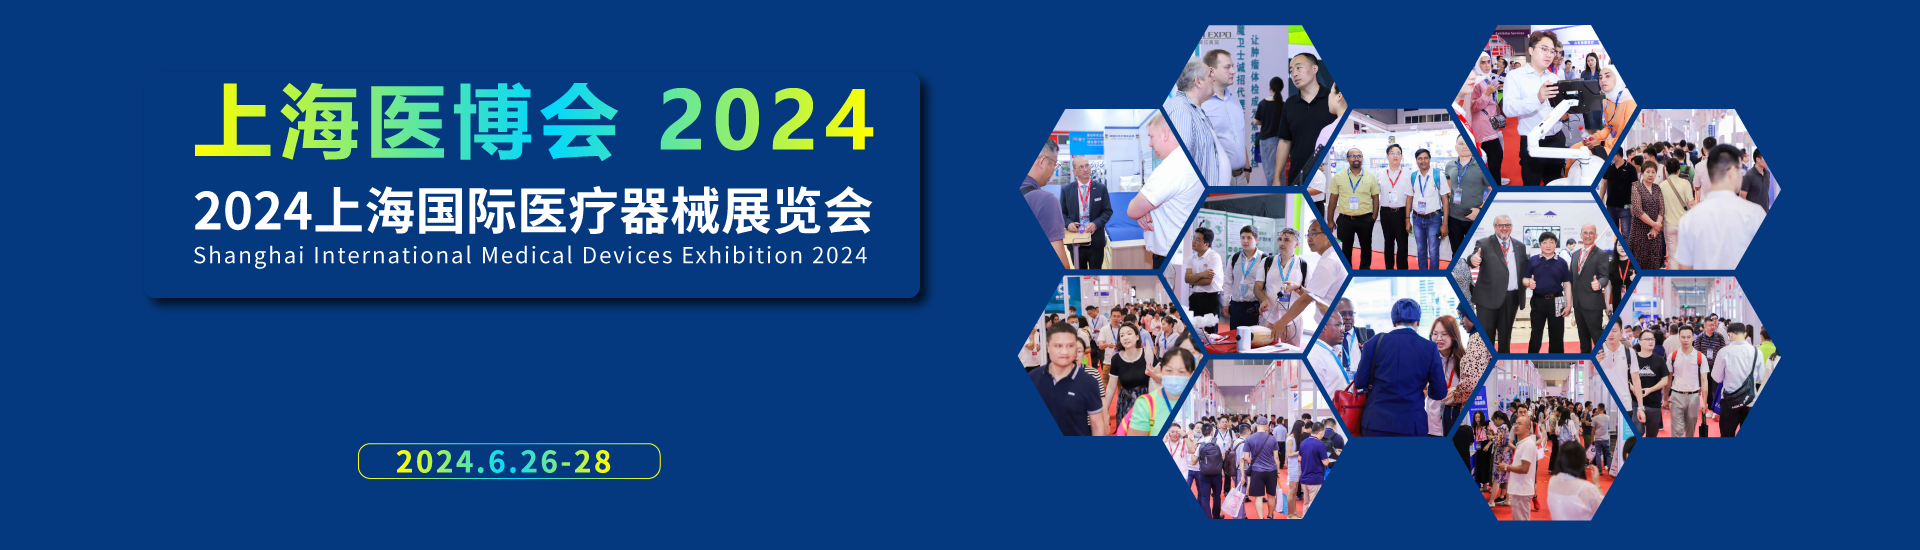 2024上海国际医疗器械展览会将于6月26-28日召开